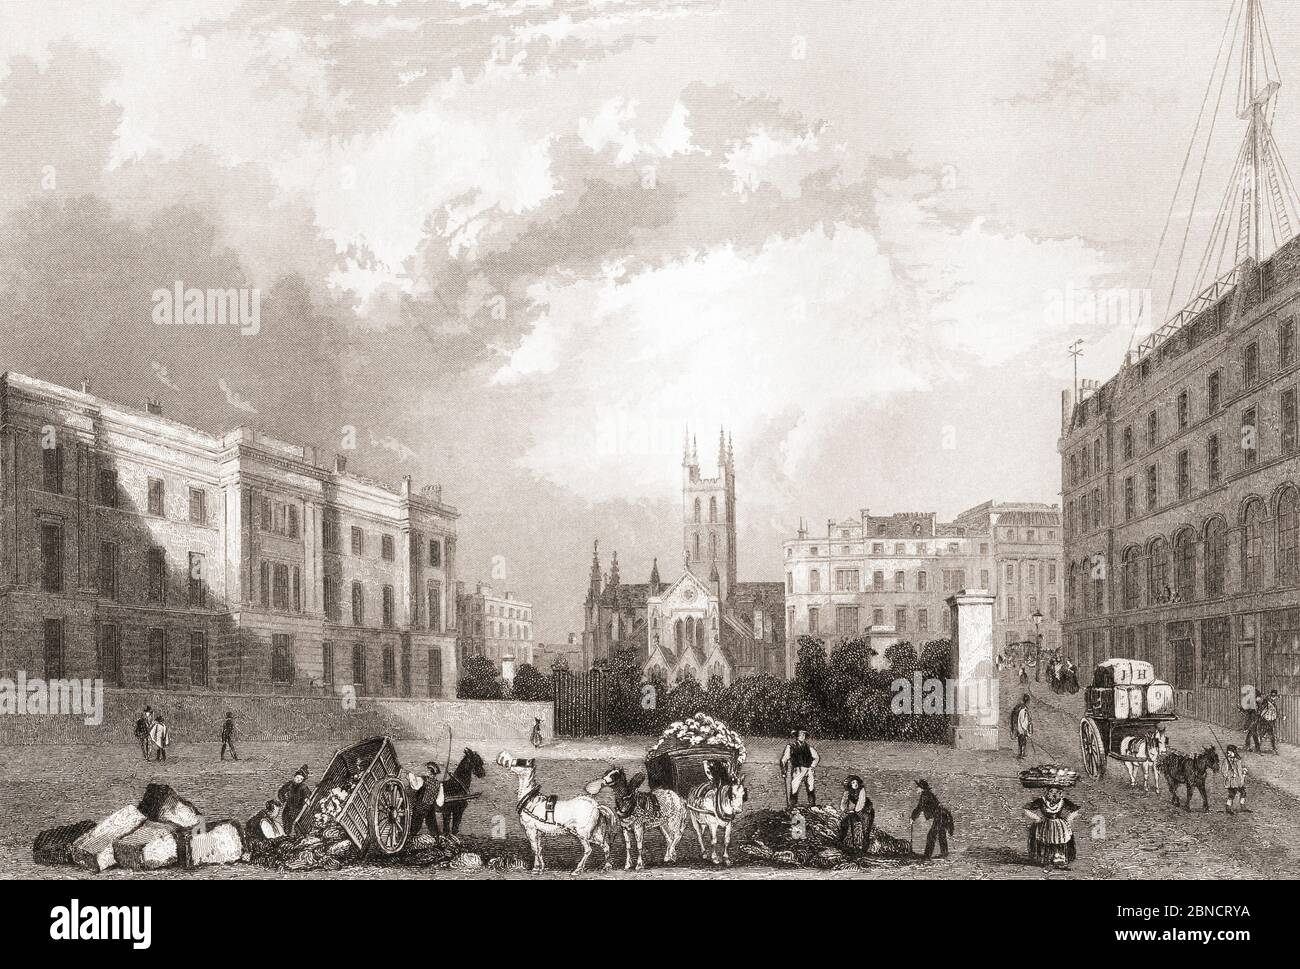 Iglesia de Southwark, Southwark, Londres, Inglaterra, siglo 19. De la Historia de Londres: Ilustrado por views en Londres y Westminster, publicado c.1838. Foto de stock